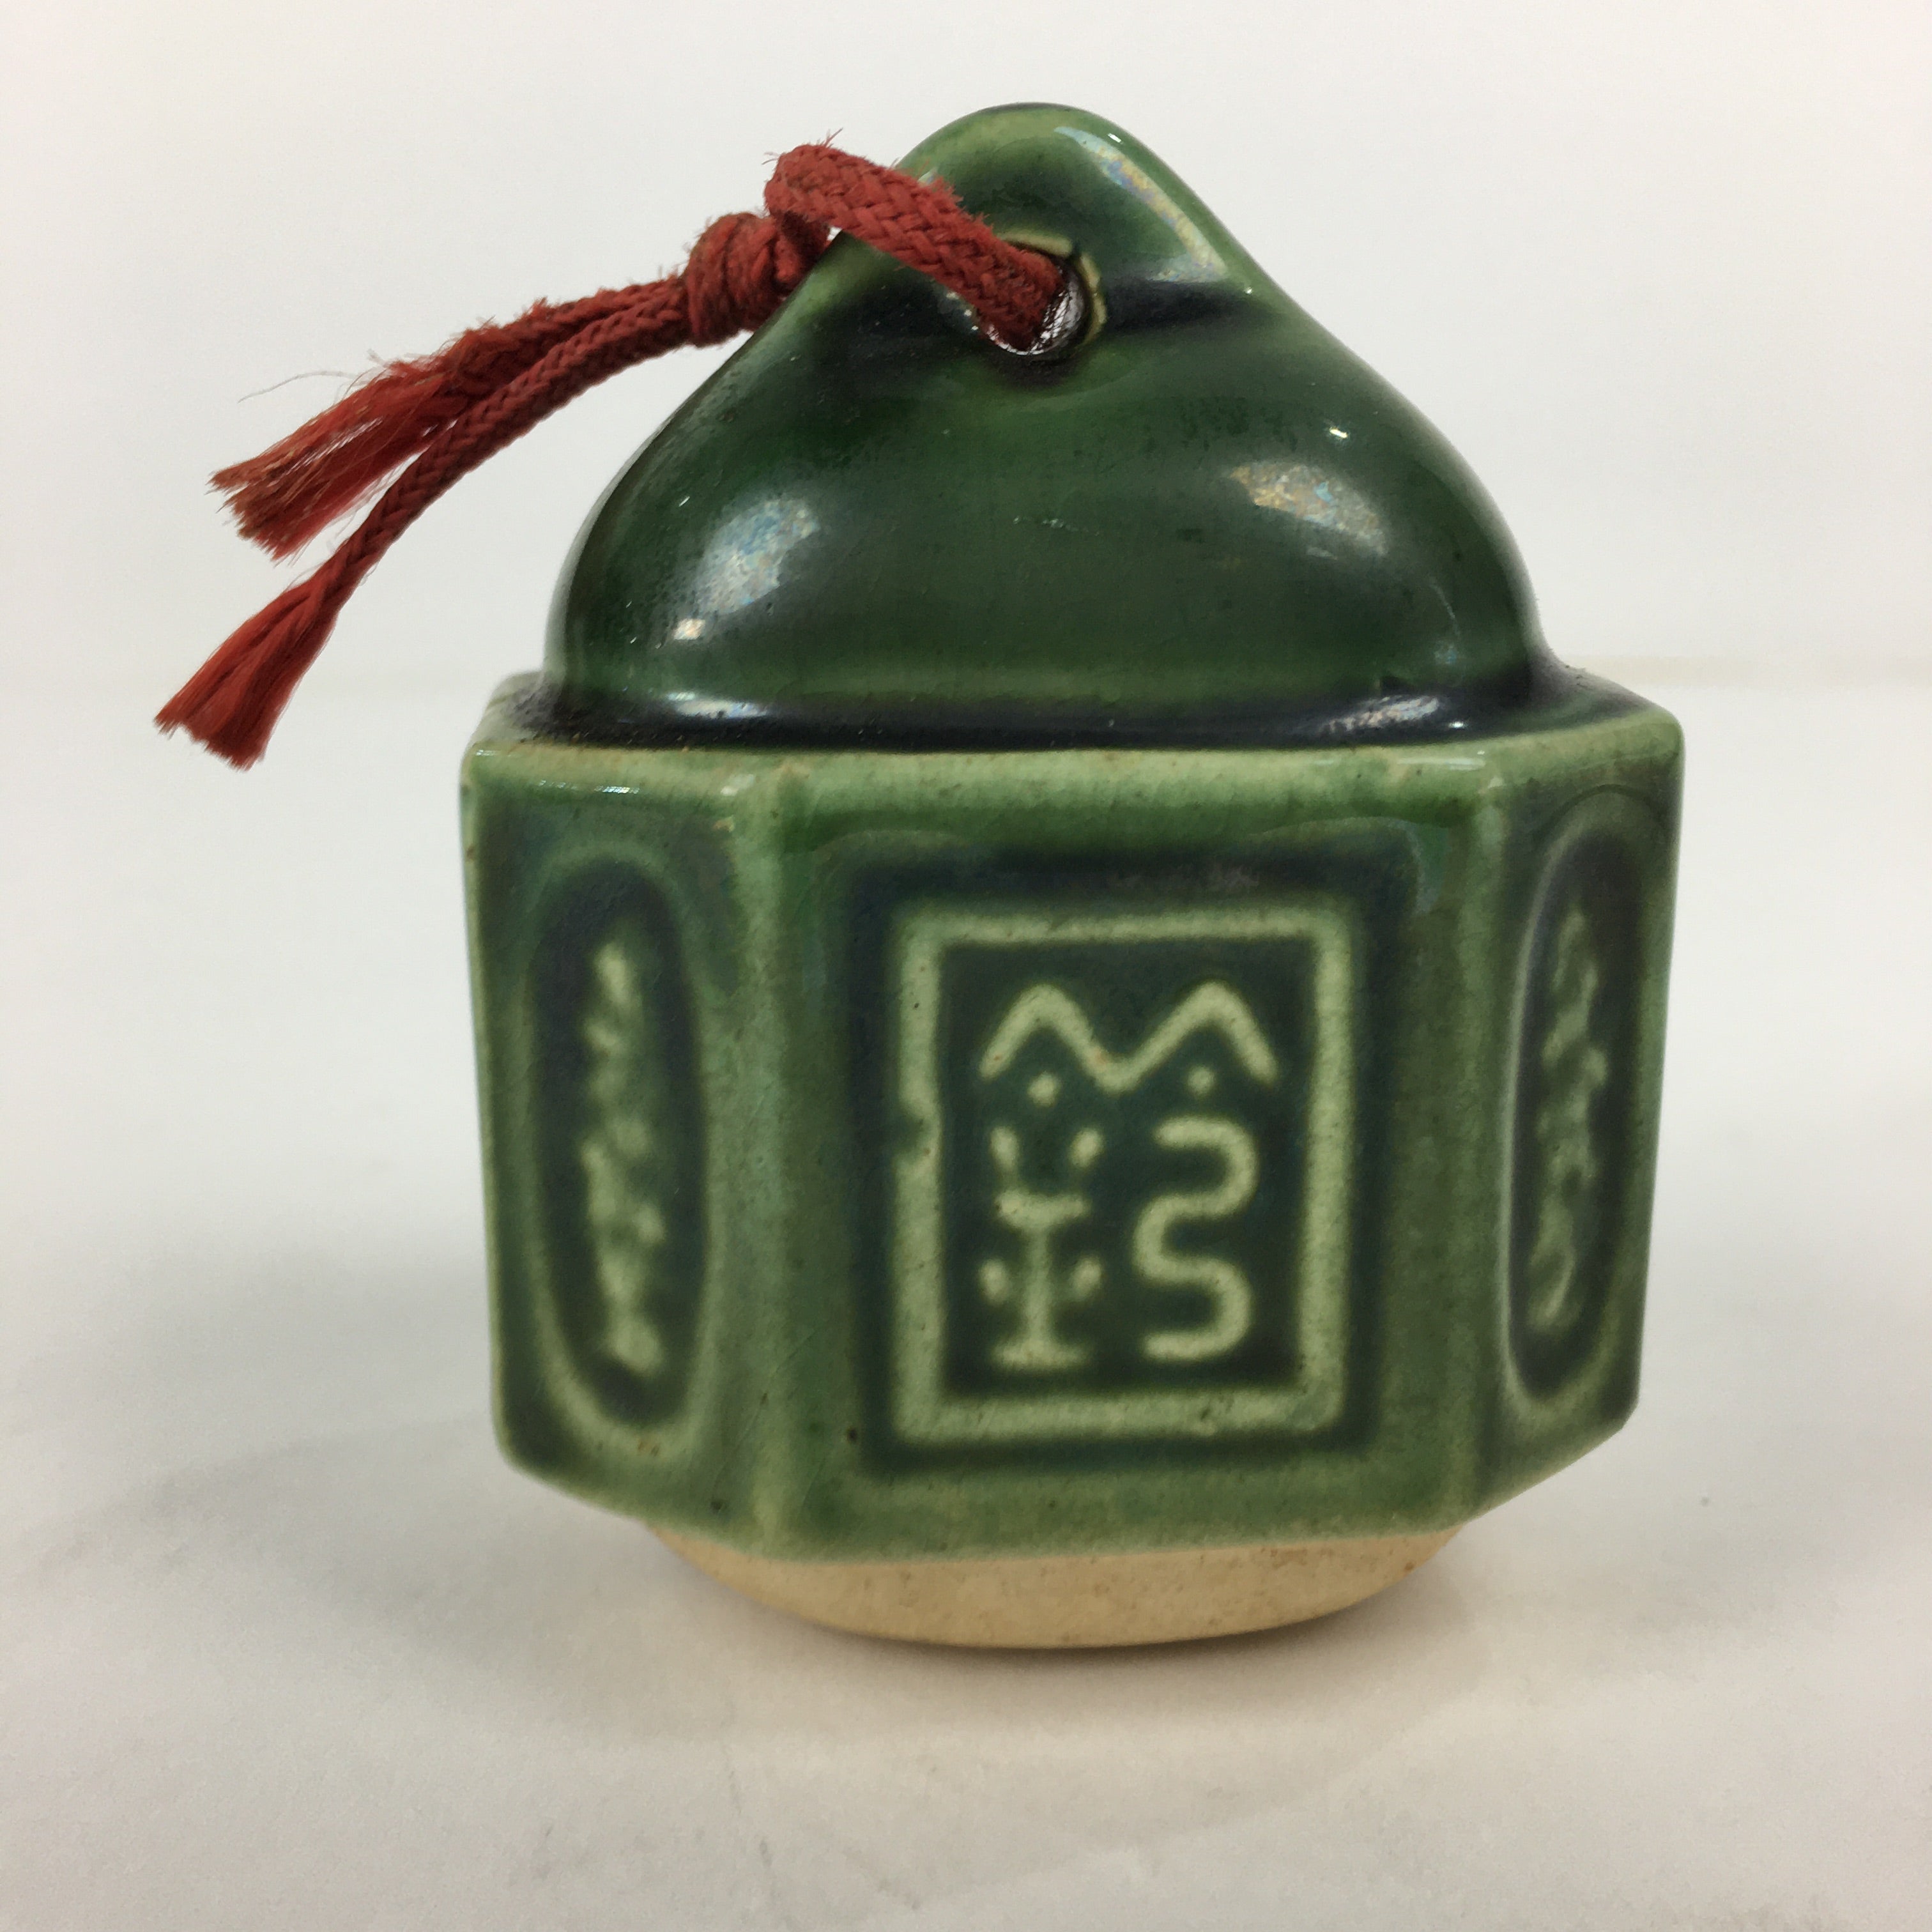 Japanese Clay Bell Dorei Vtg Ceramic Doll Amulet Green Glaze Kanji DR336